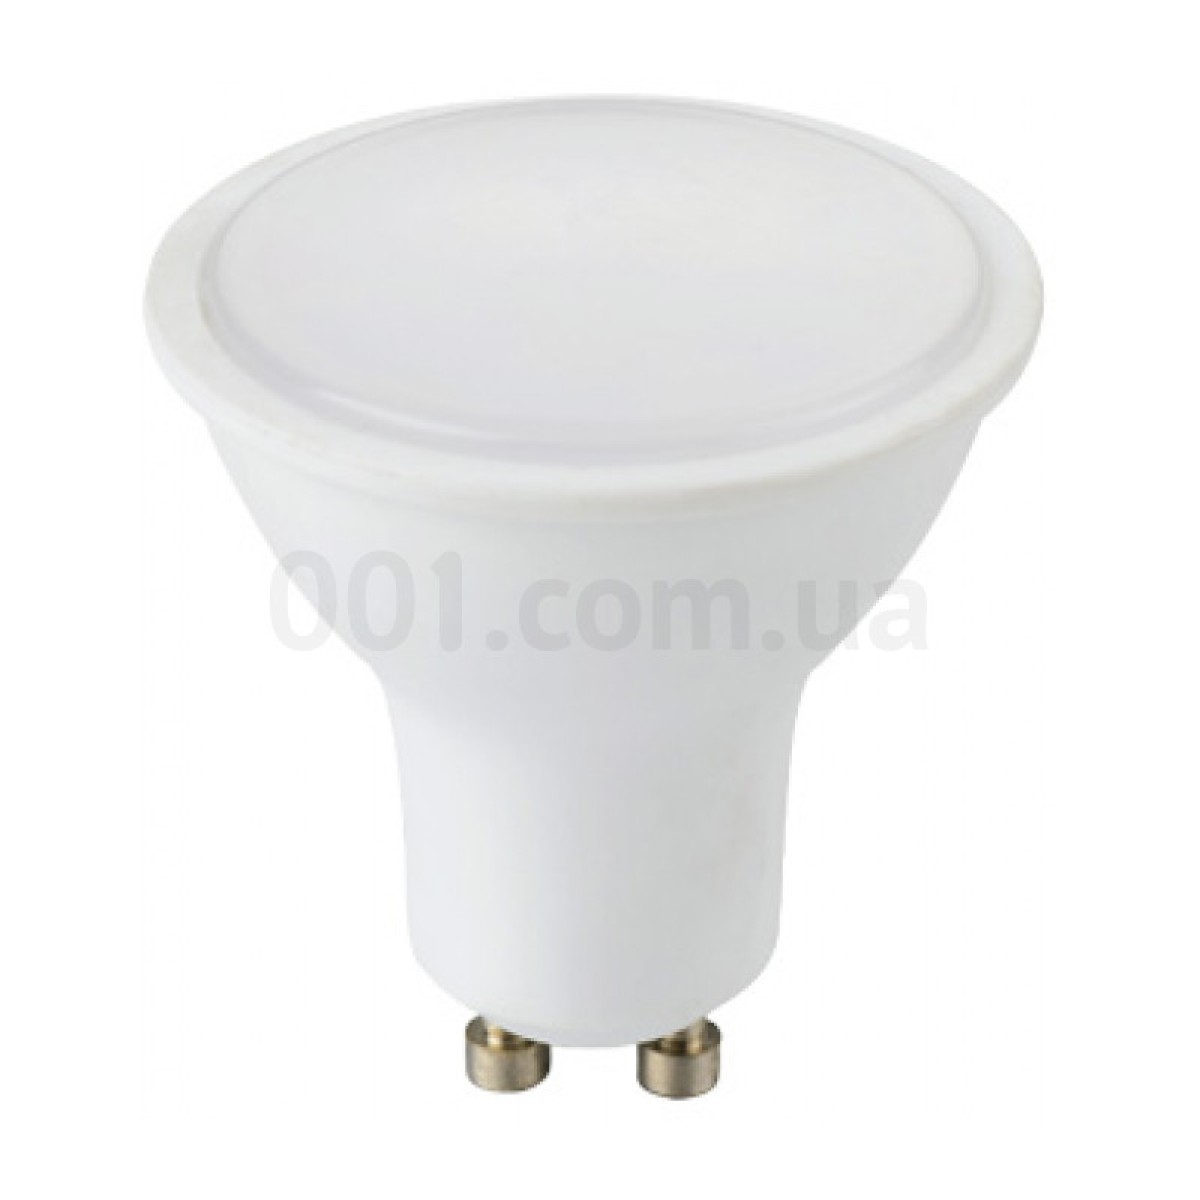 Светодиодная лампа e.LED.lamp.GU10.5.3000 5Вт 3000К GU10, E.NEXT 256_256.jpg